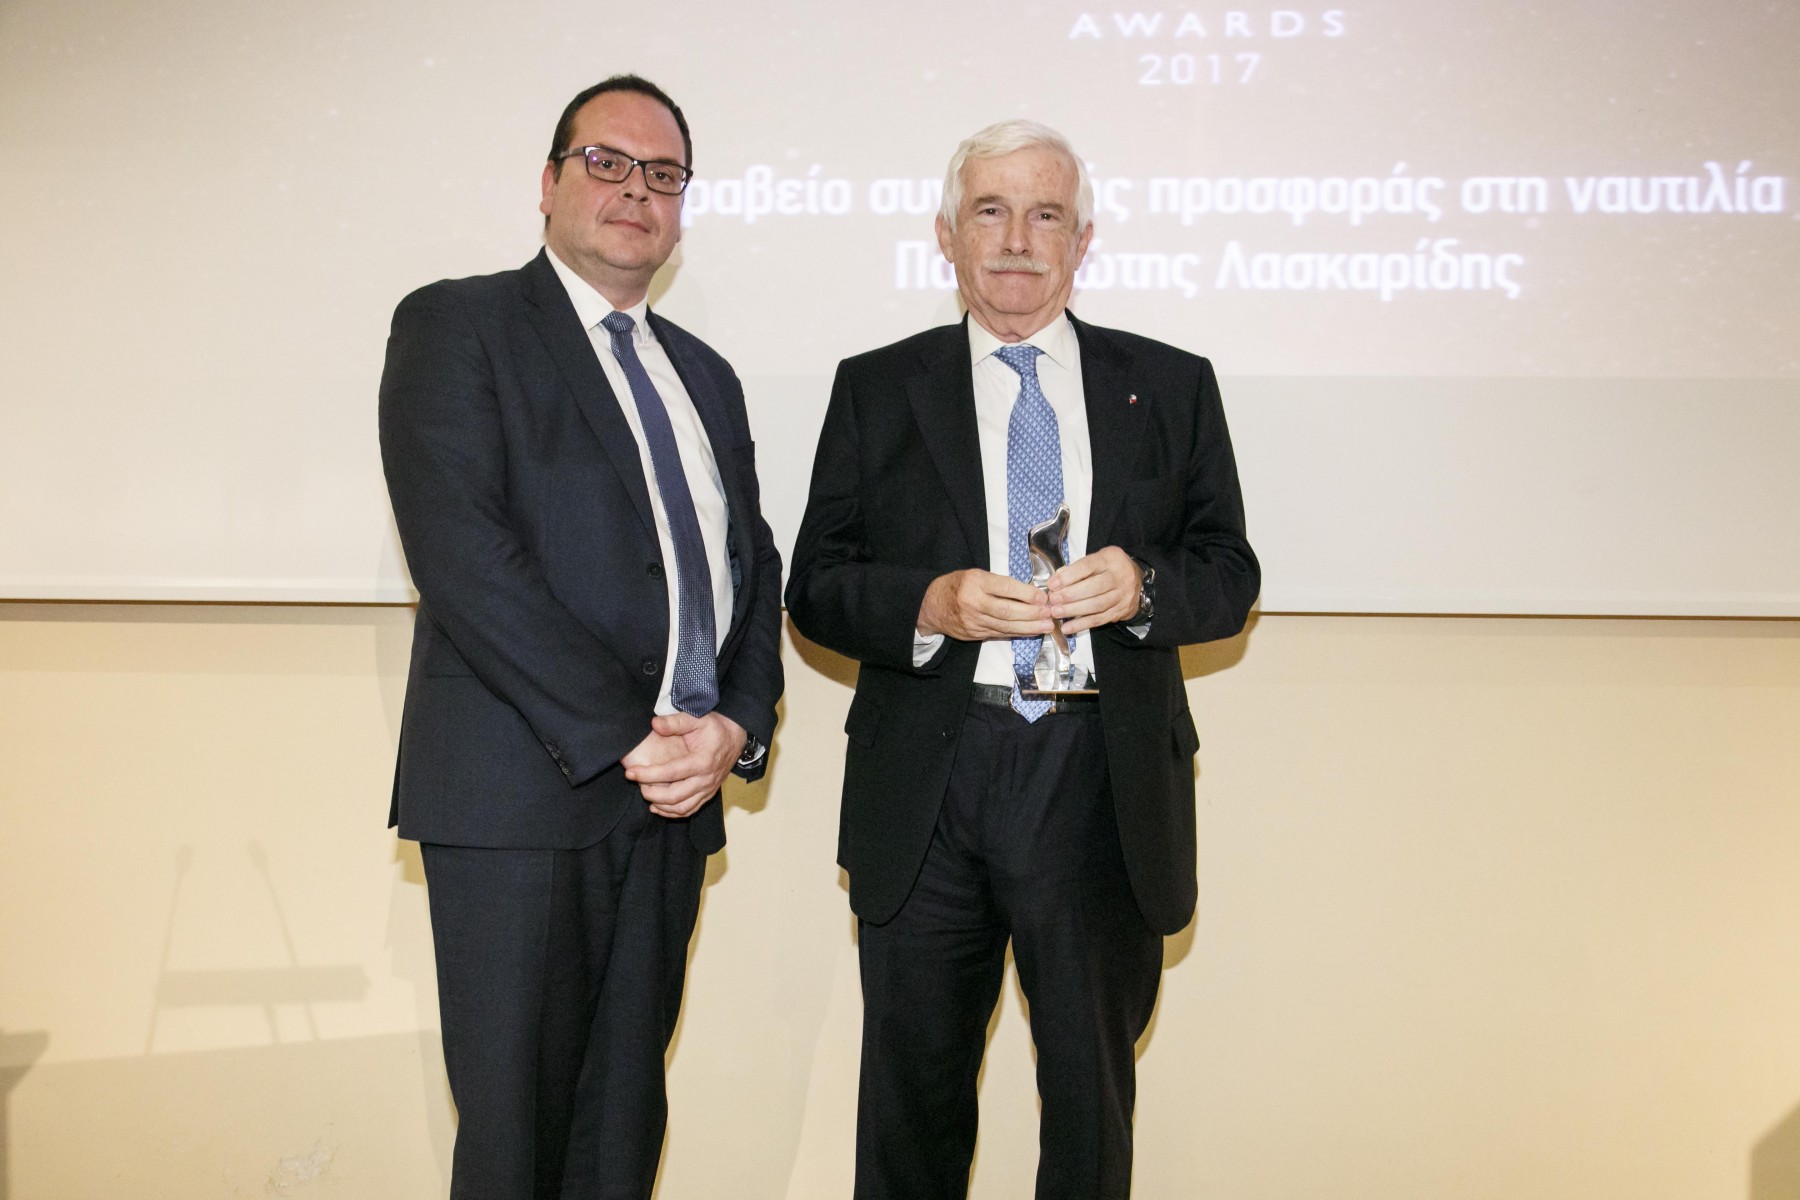 Ο κ. Παναγιώτης Λασκαρίδης, παραλαμβάνει το βραβείο από τον κ. Γιάννη Ξενακούδη, Seafarers' Documentation Officer του νηολογίου των Νήσων Marshall